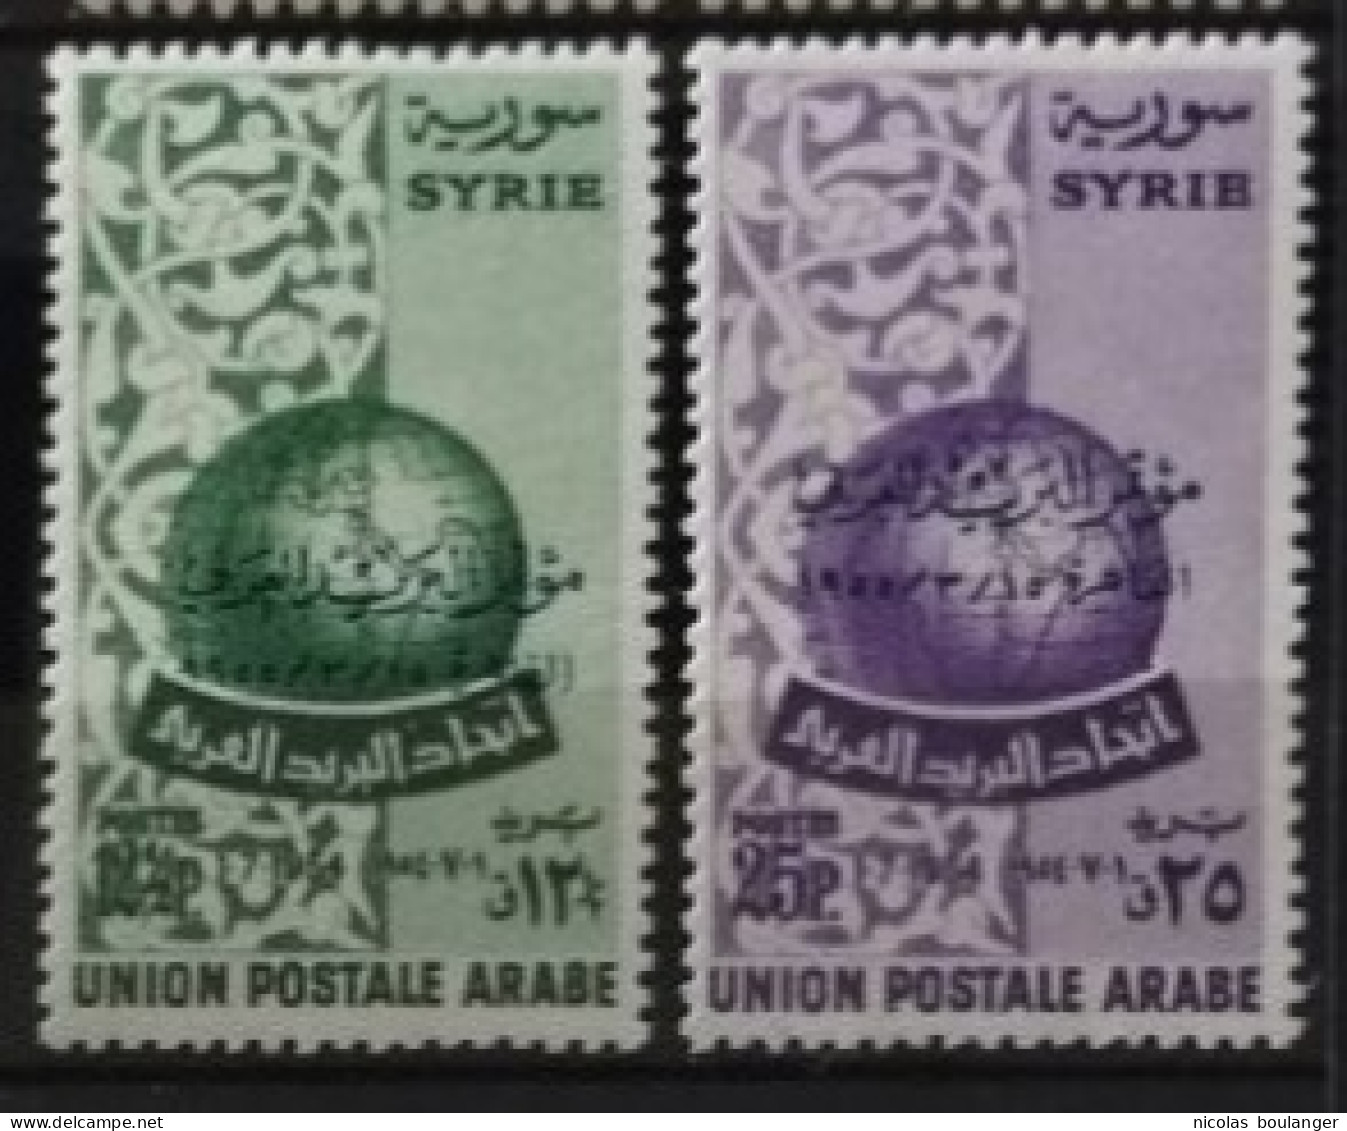 Syrie 1955 / Yvert N°78-79 / ** - Syria